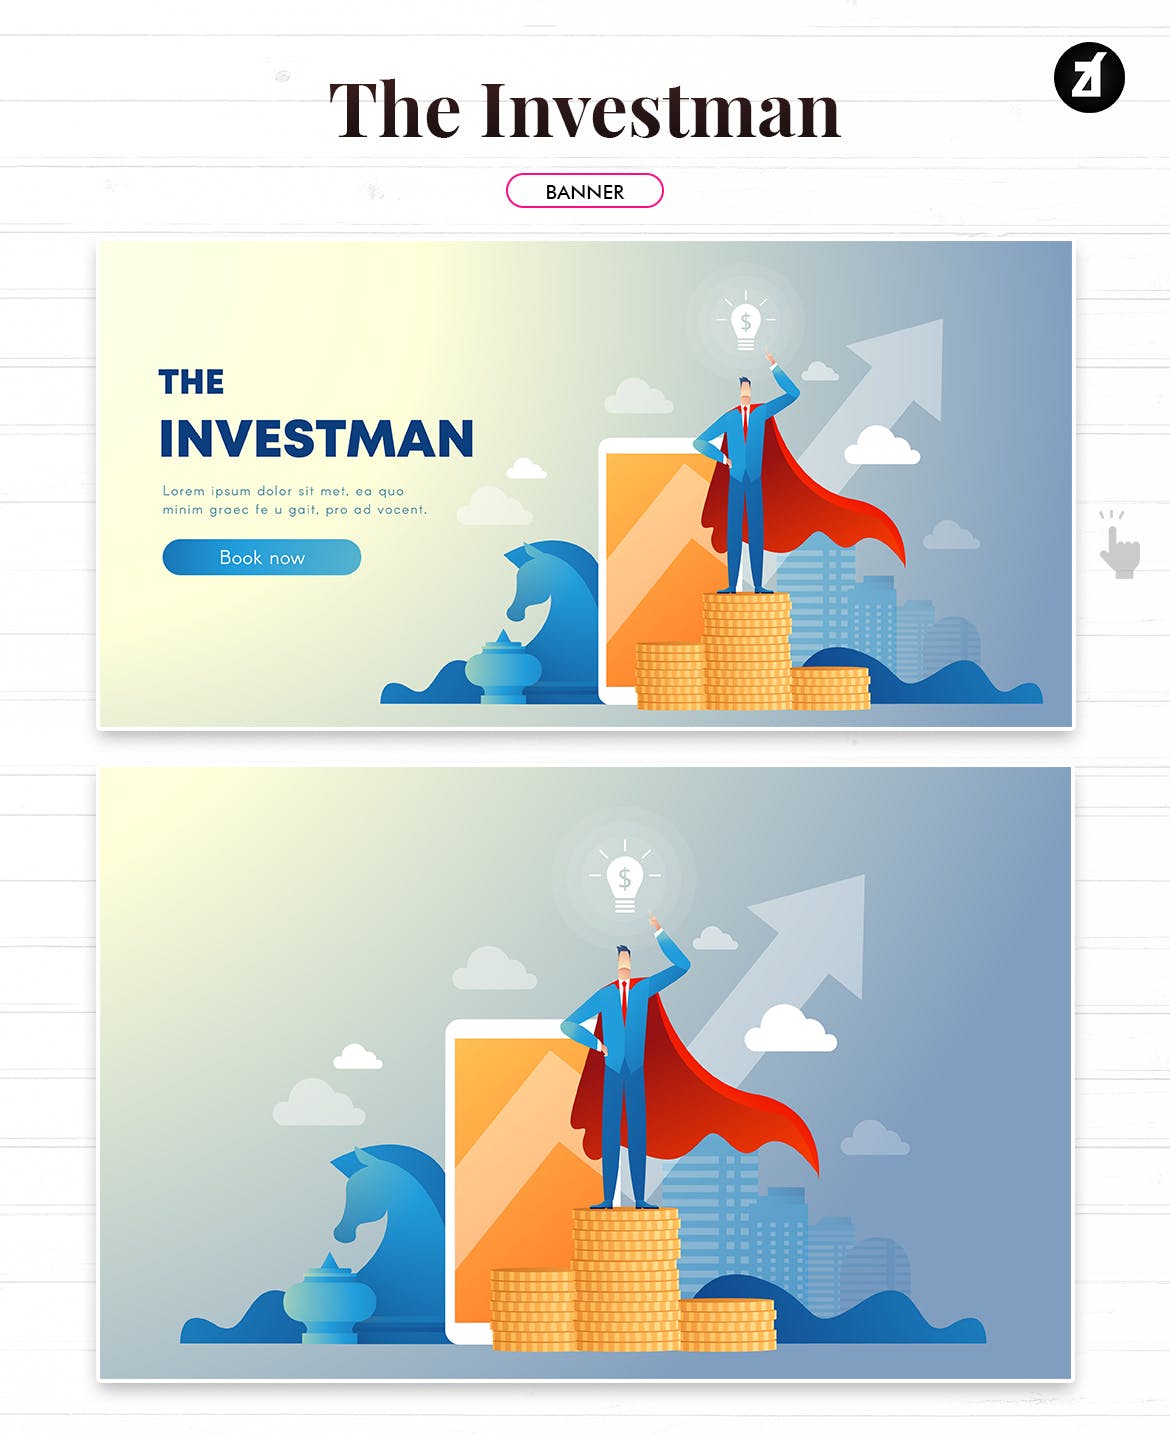 投资者主题矢量素材库精选概念插画素材 The investman illustration with text layout插图(2)